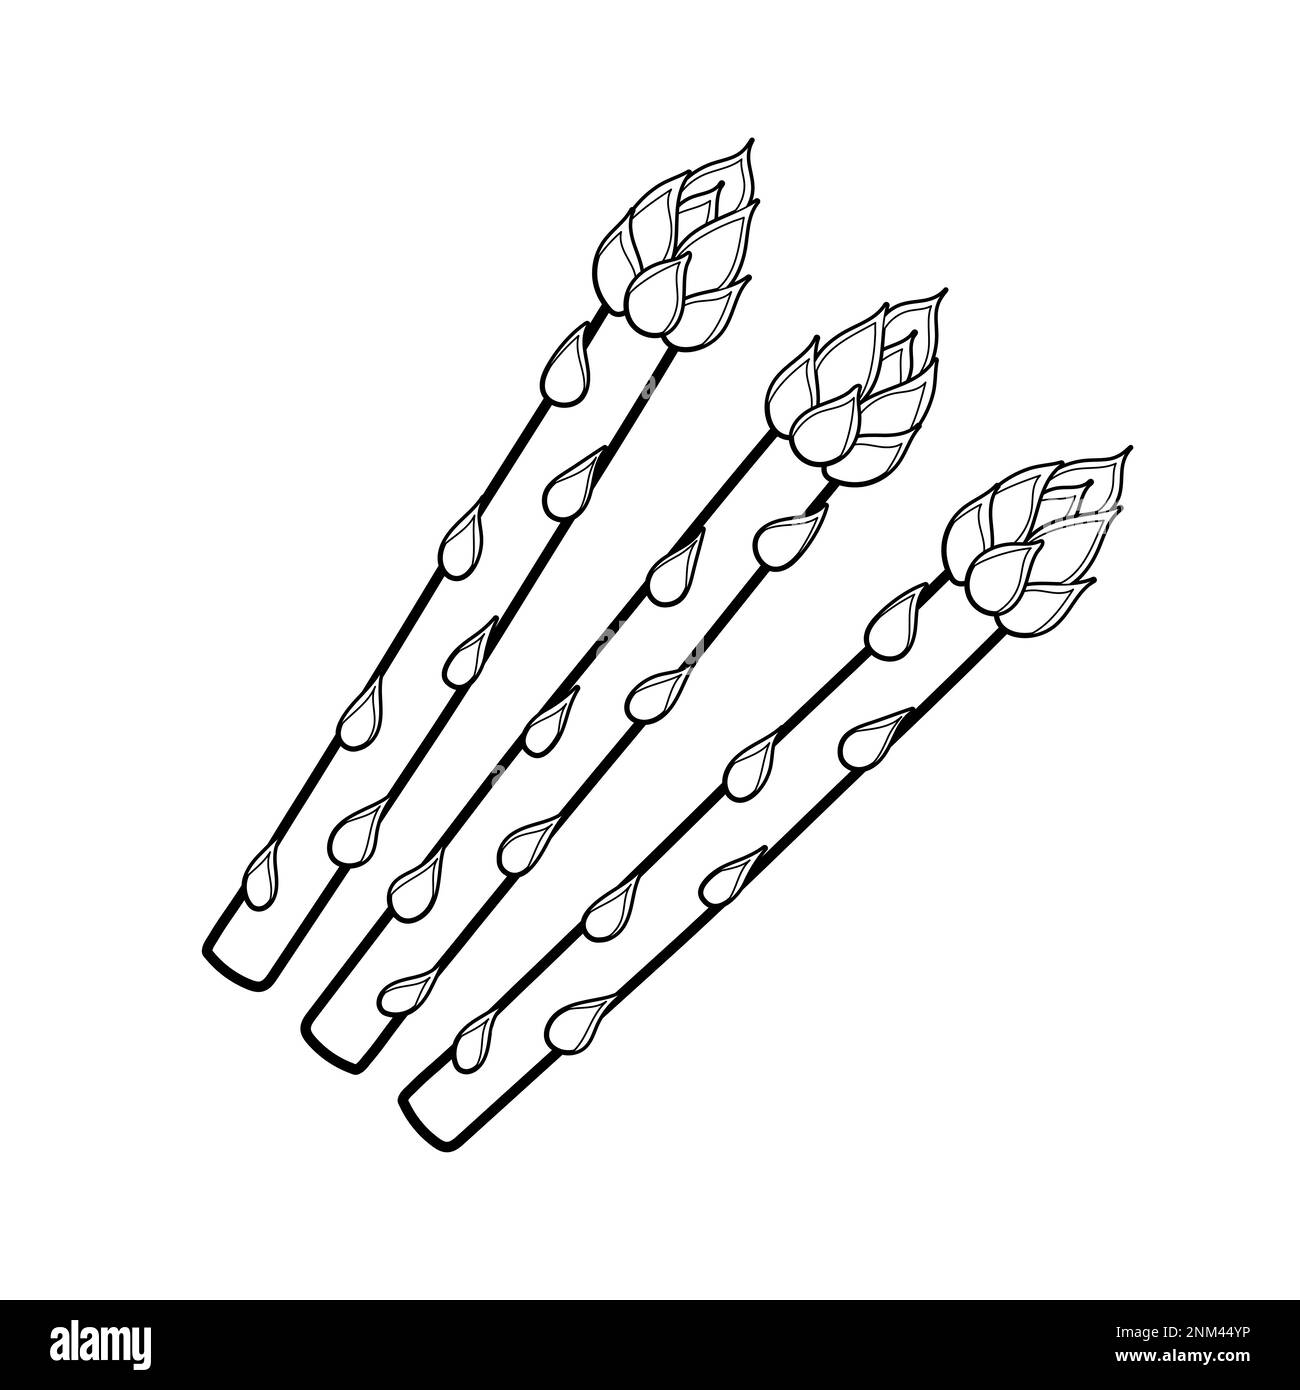 Page de coloriage des asperges pour adultes et enfants. Imprimé noir et blanc avec asperges Illustration de Vecteur